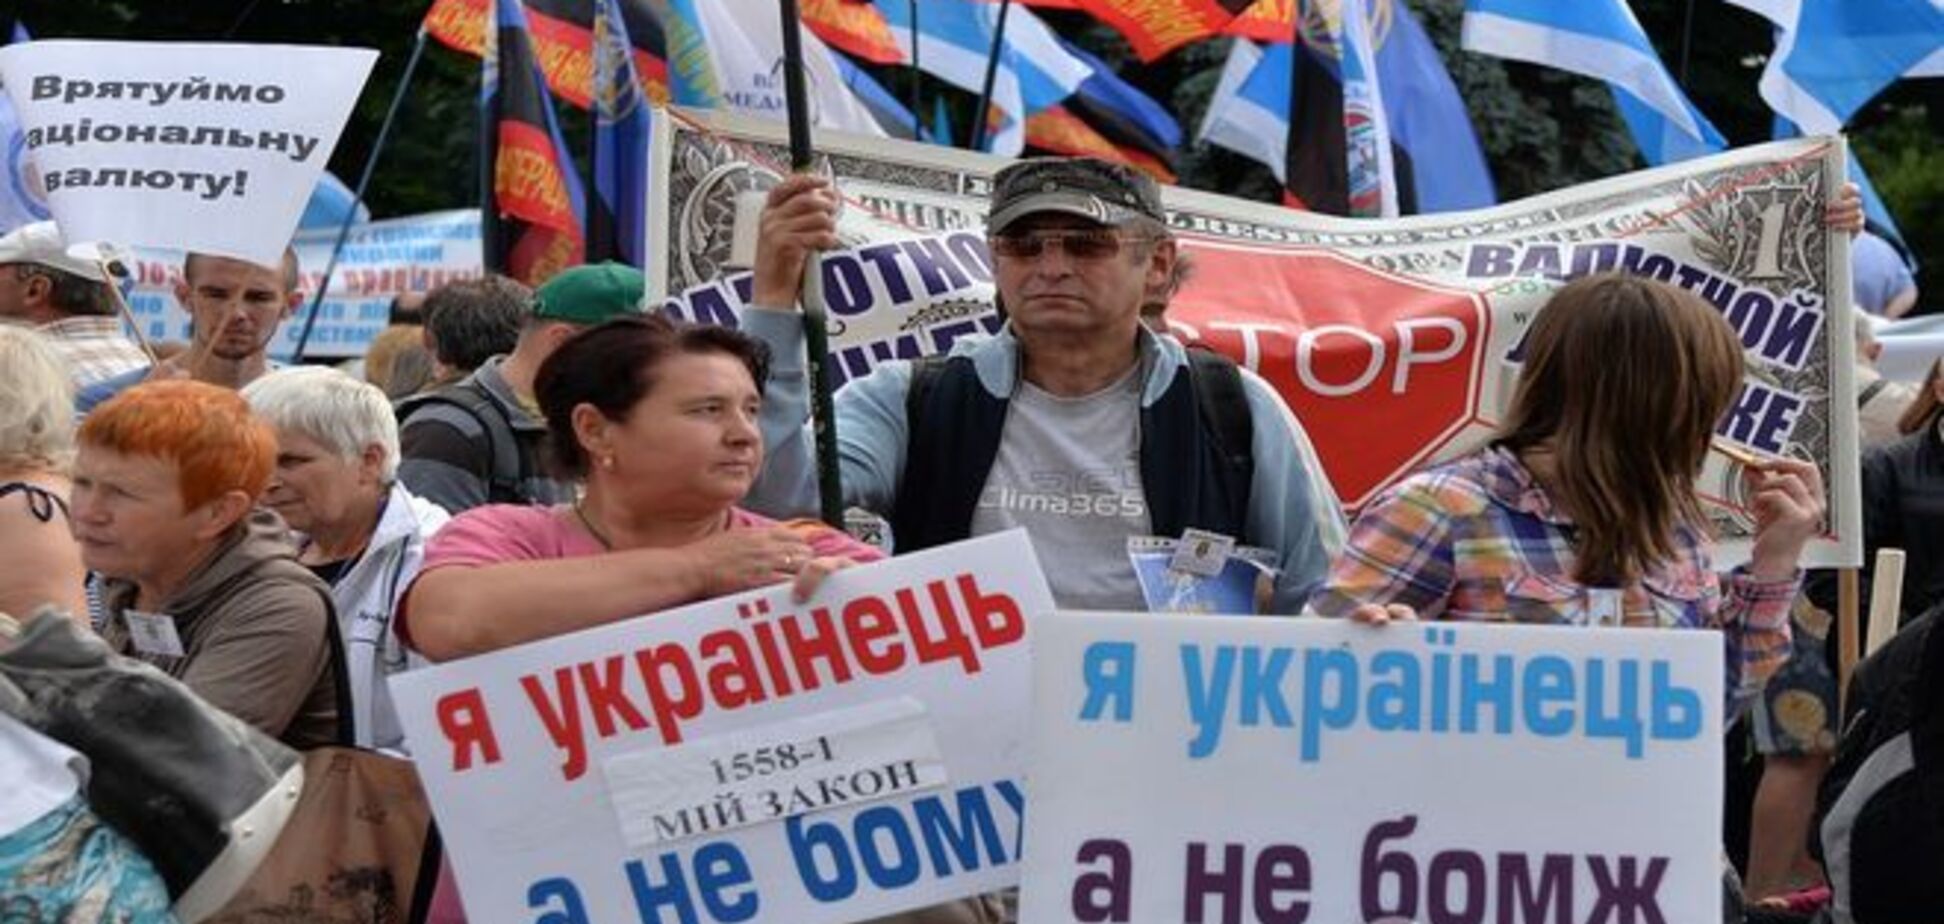 'Я украинец, а не бомж': под Радой собрались более тысячи разочарованных украинцев, фоторепортаж